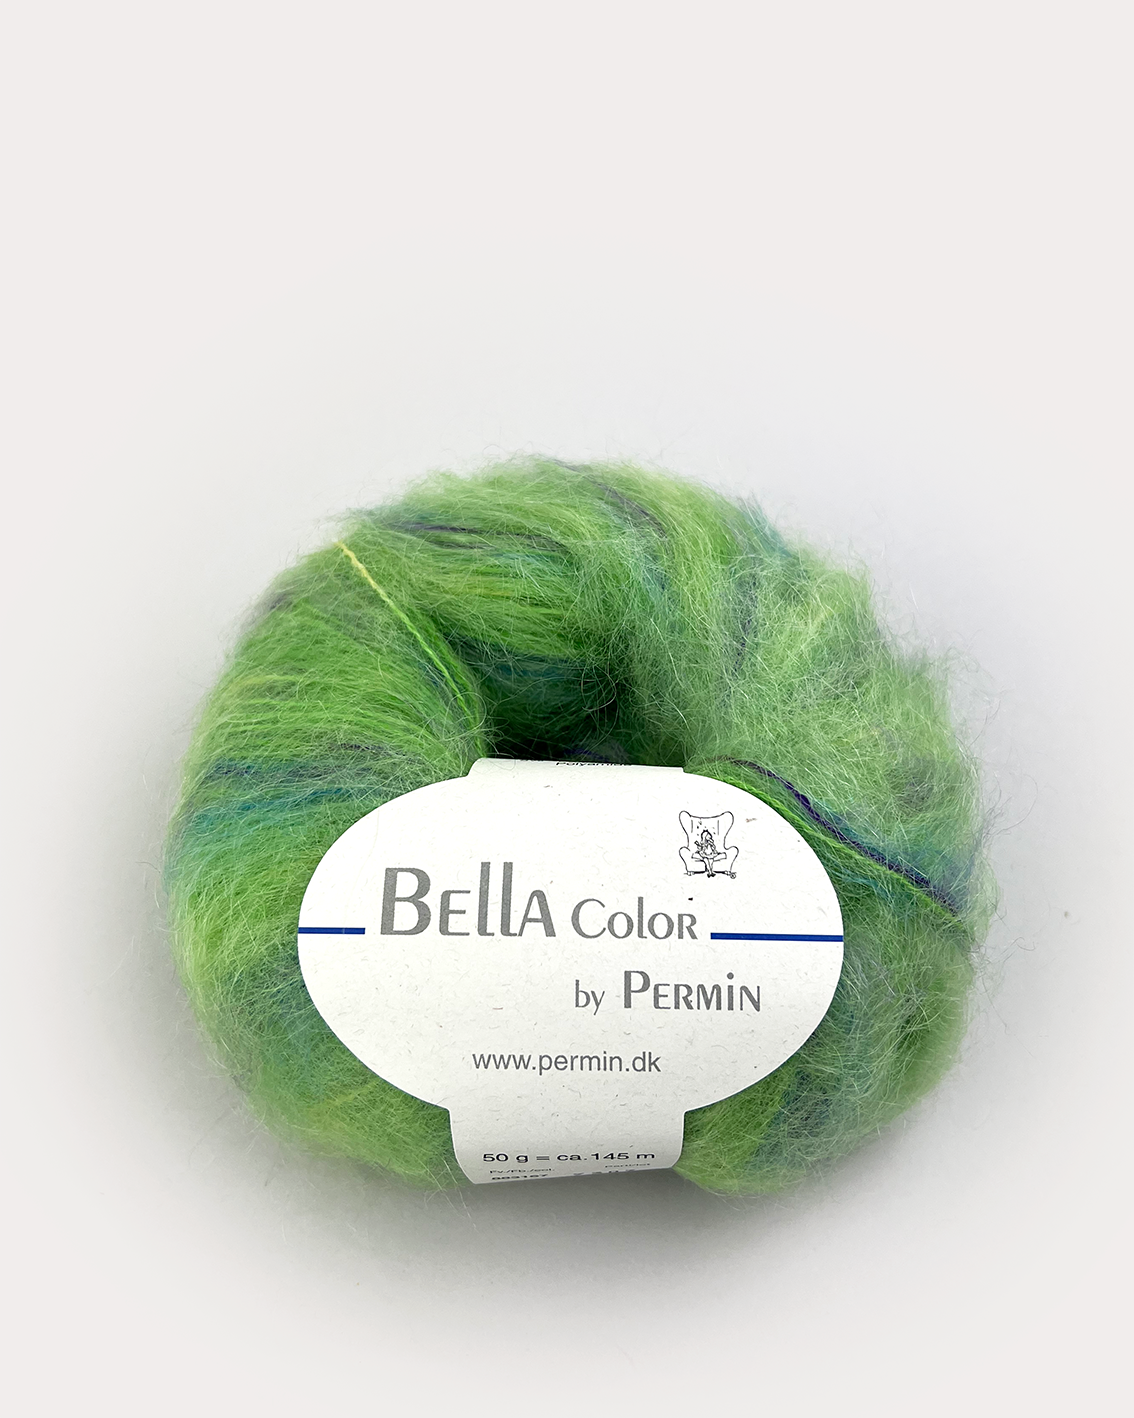 Bella Color by Permin